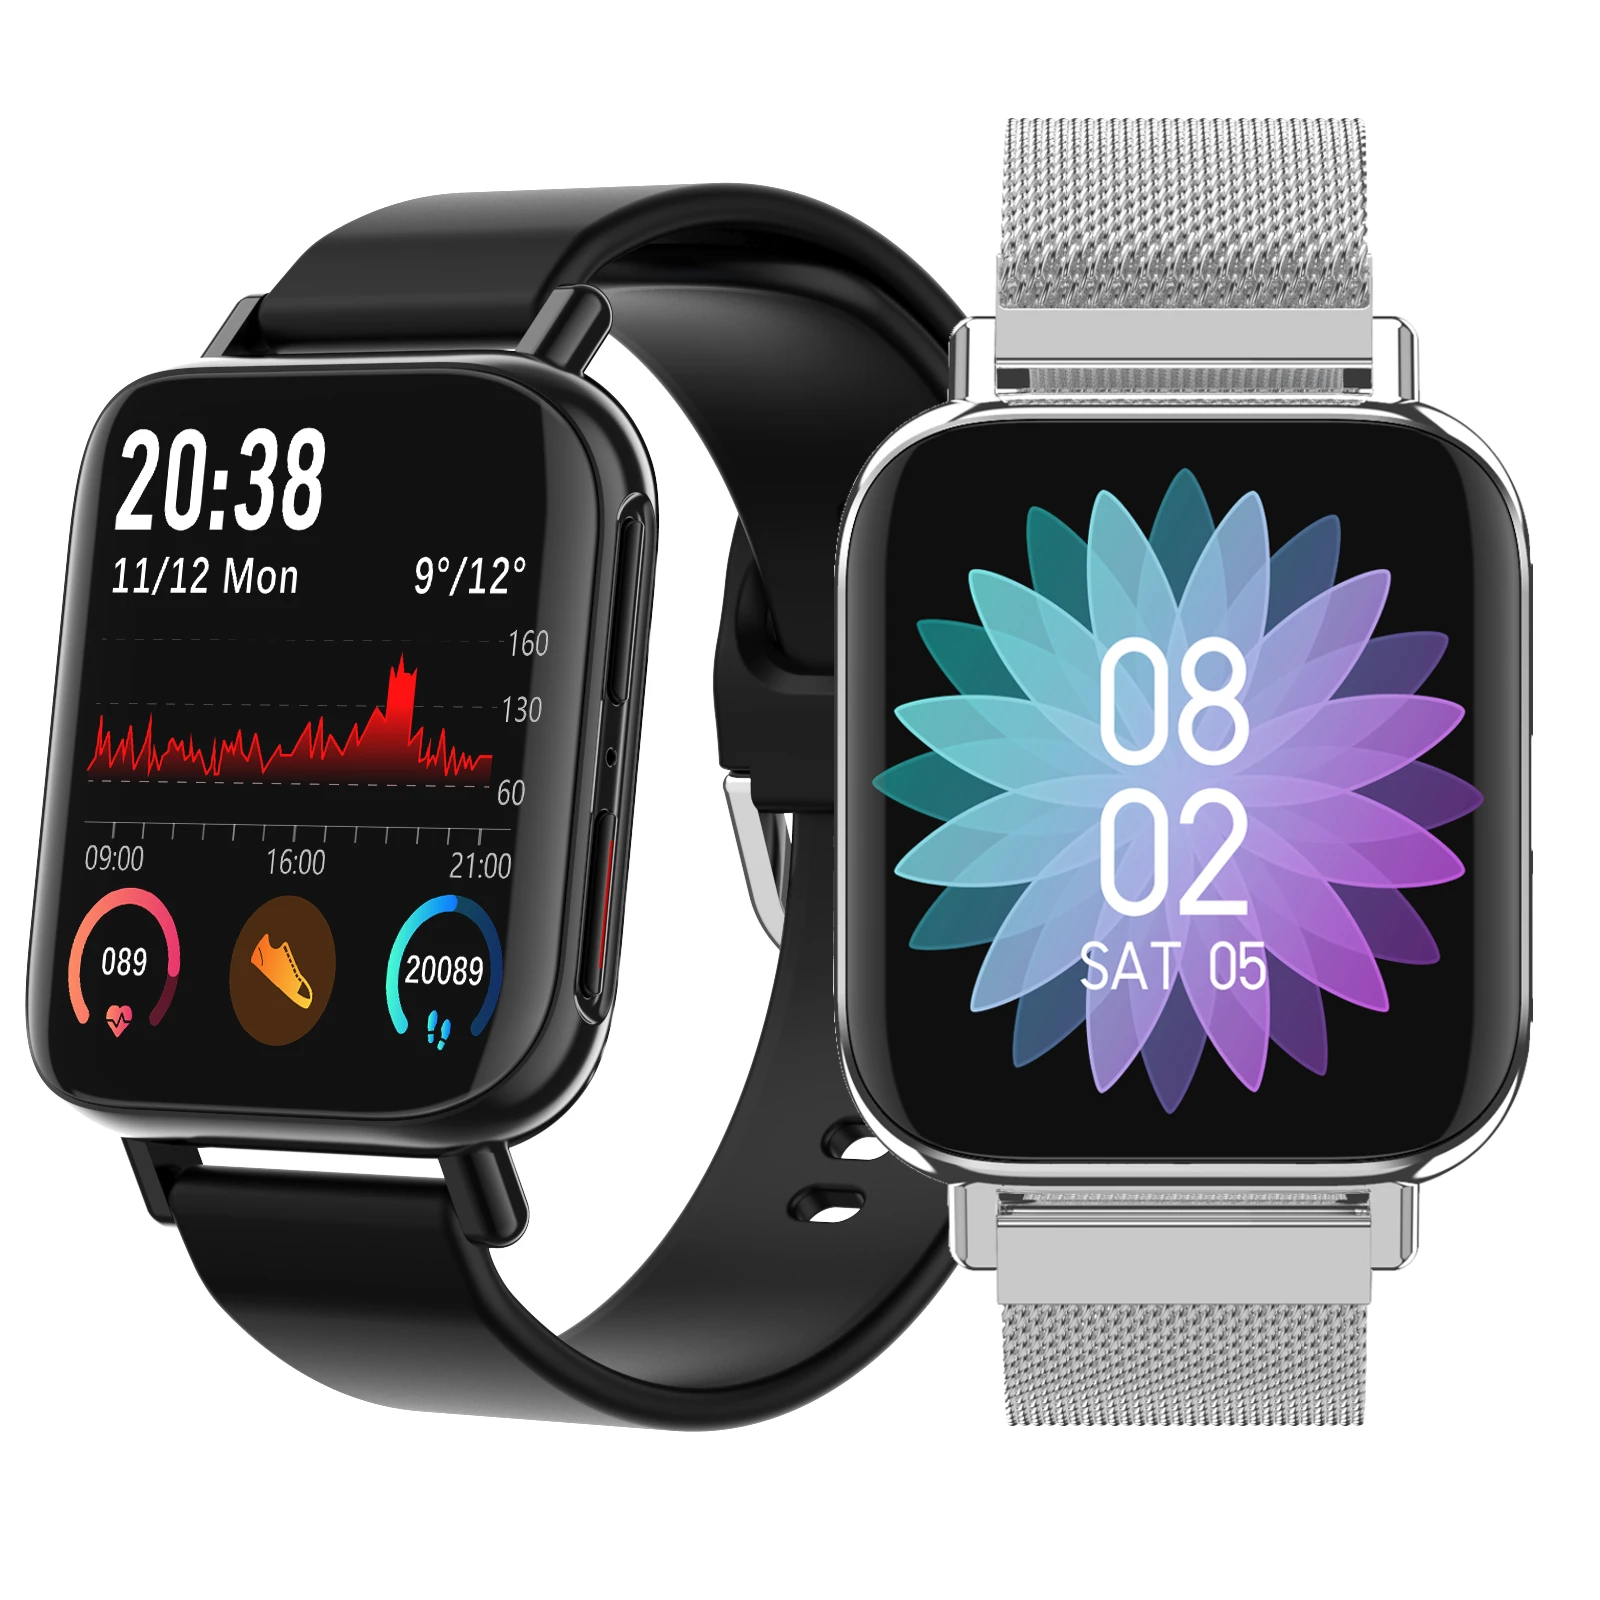 [Połączenie bluetooth] LYNWO M96 1.54 '' Full Touch HD Zakrzywiony ekran Podwójny interfejs użytkownika Menu Odtwarzanie muzyki Sport Trening Tętno Monitor ciśnienia krwi Inteligentny zegarek